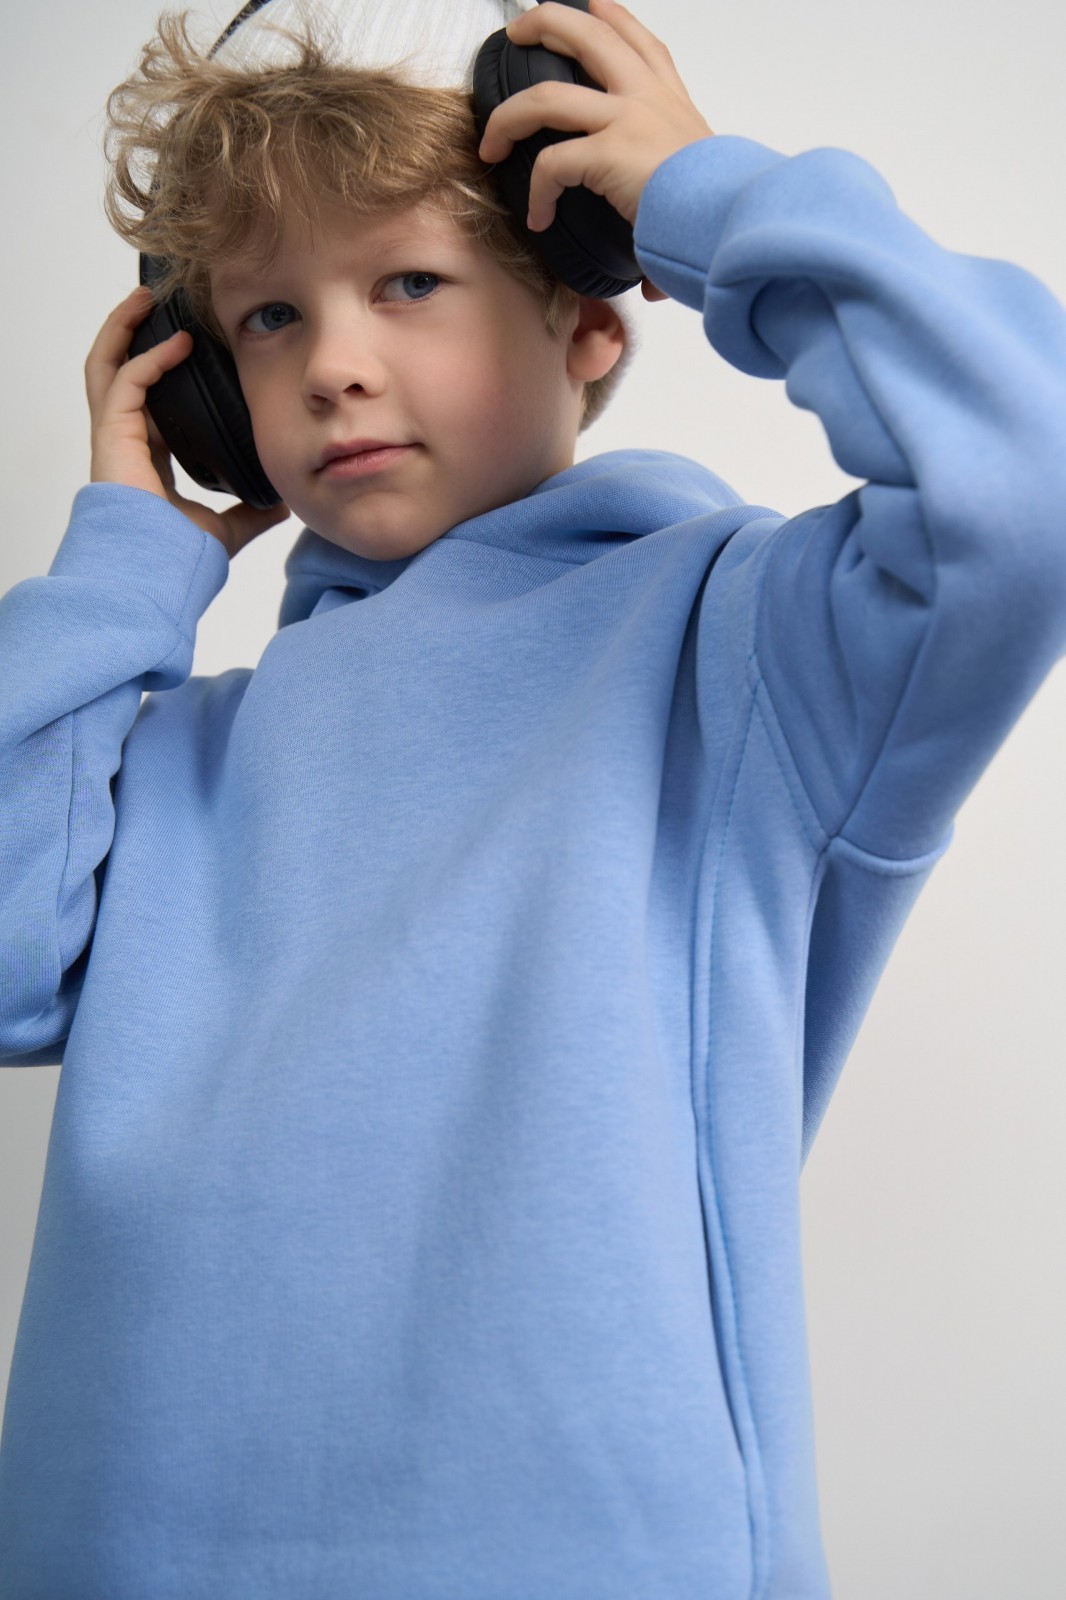 Дитячий спортивний костюм для хлопчика колір світло-блакитний р.152 444158